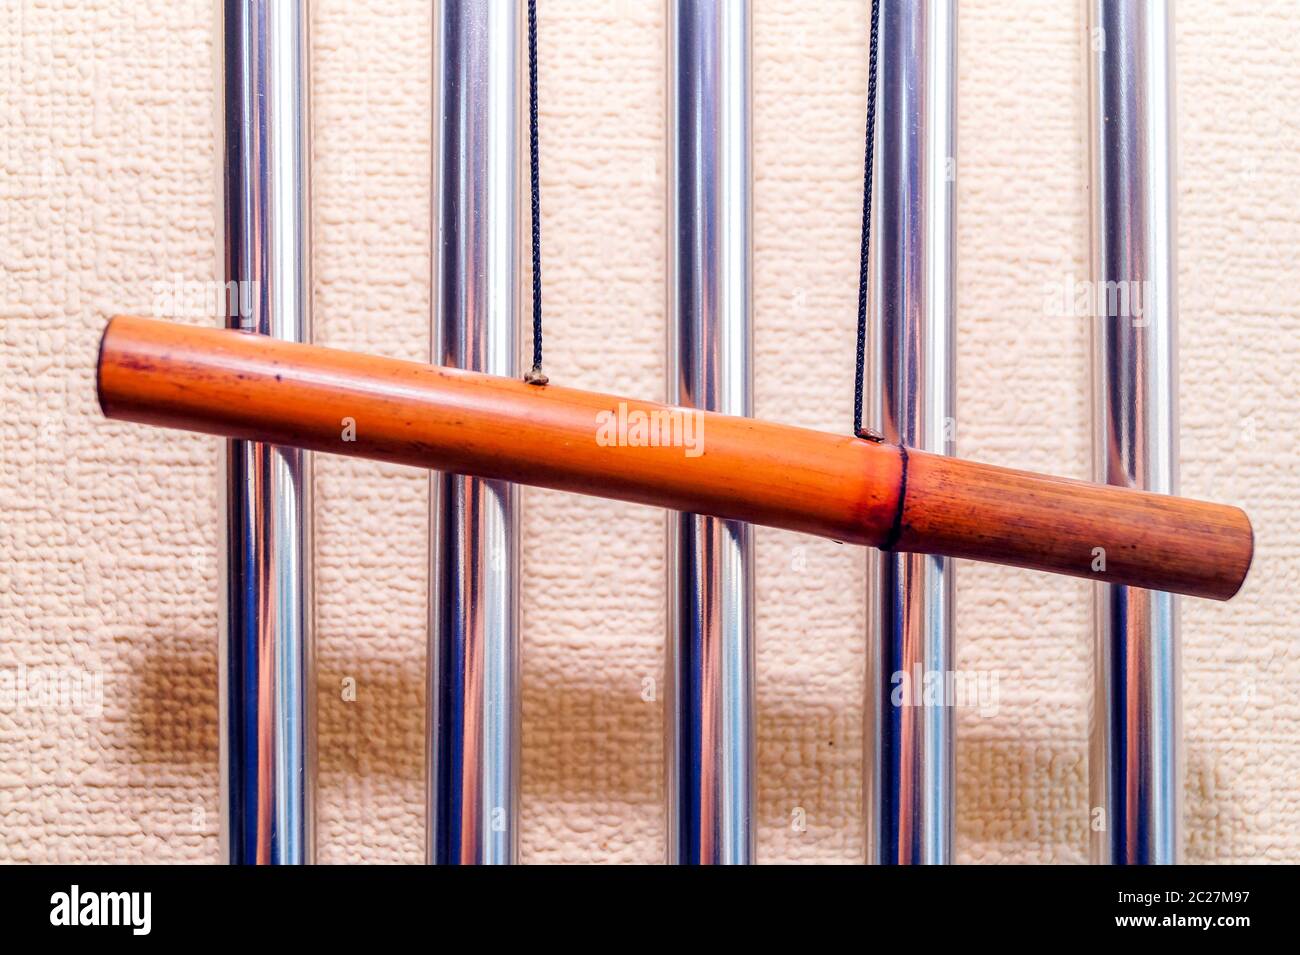 Campanas tubulares metálicas con tubo de bambú cuelgan en la pared y crean la música del viento. Foto de stock